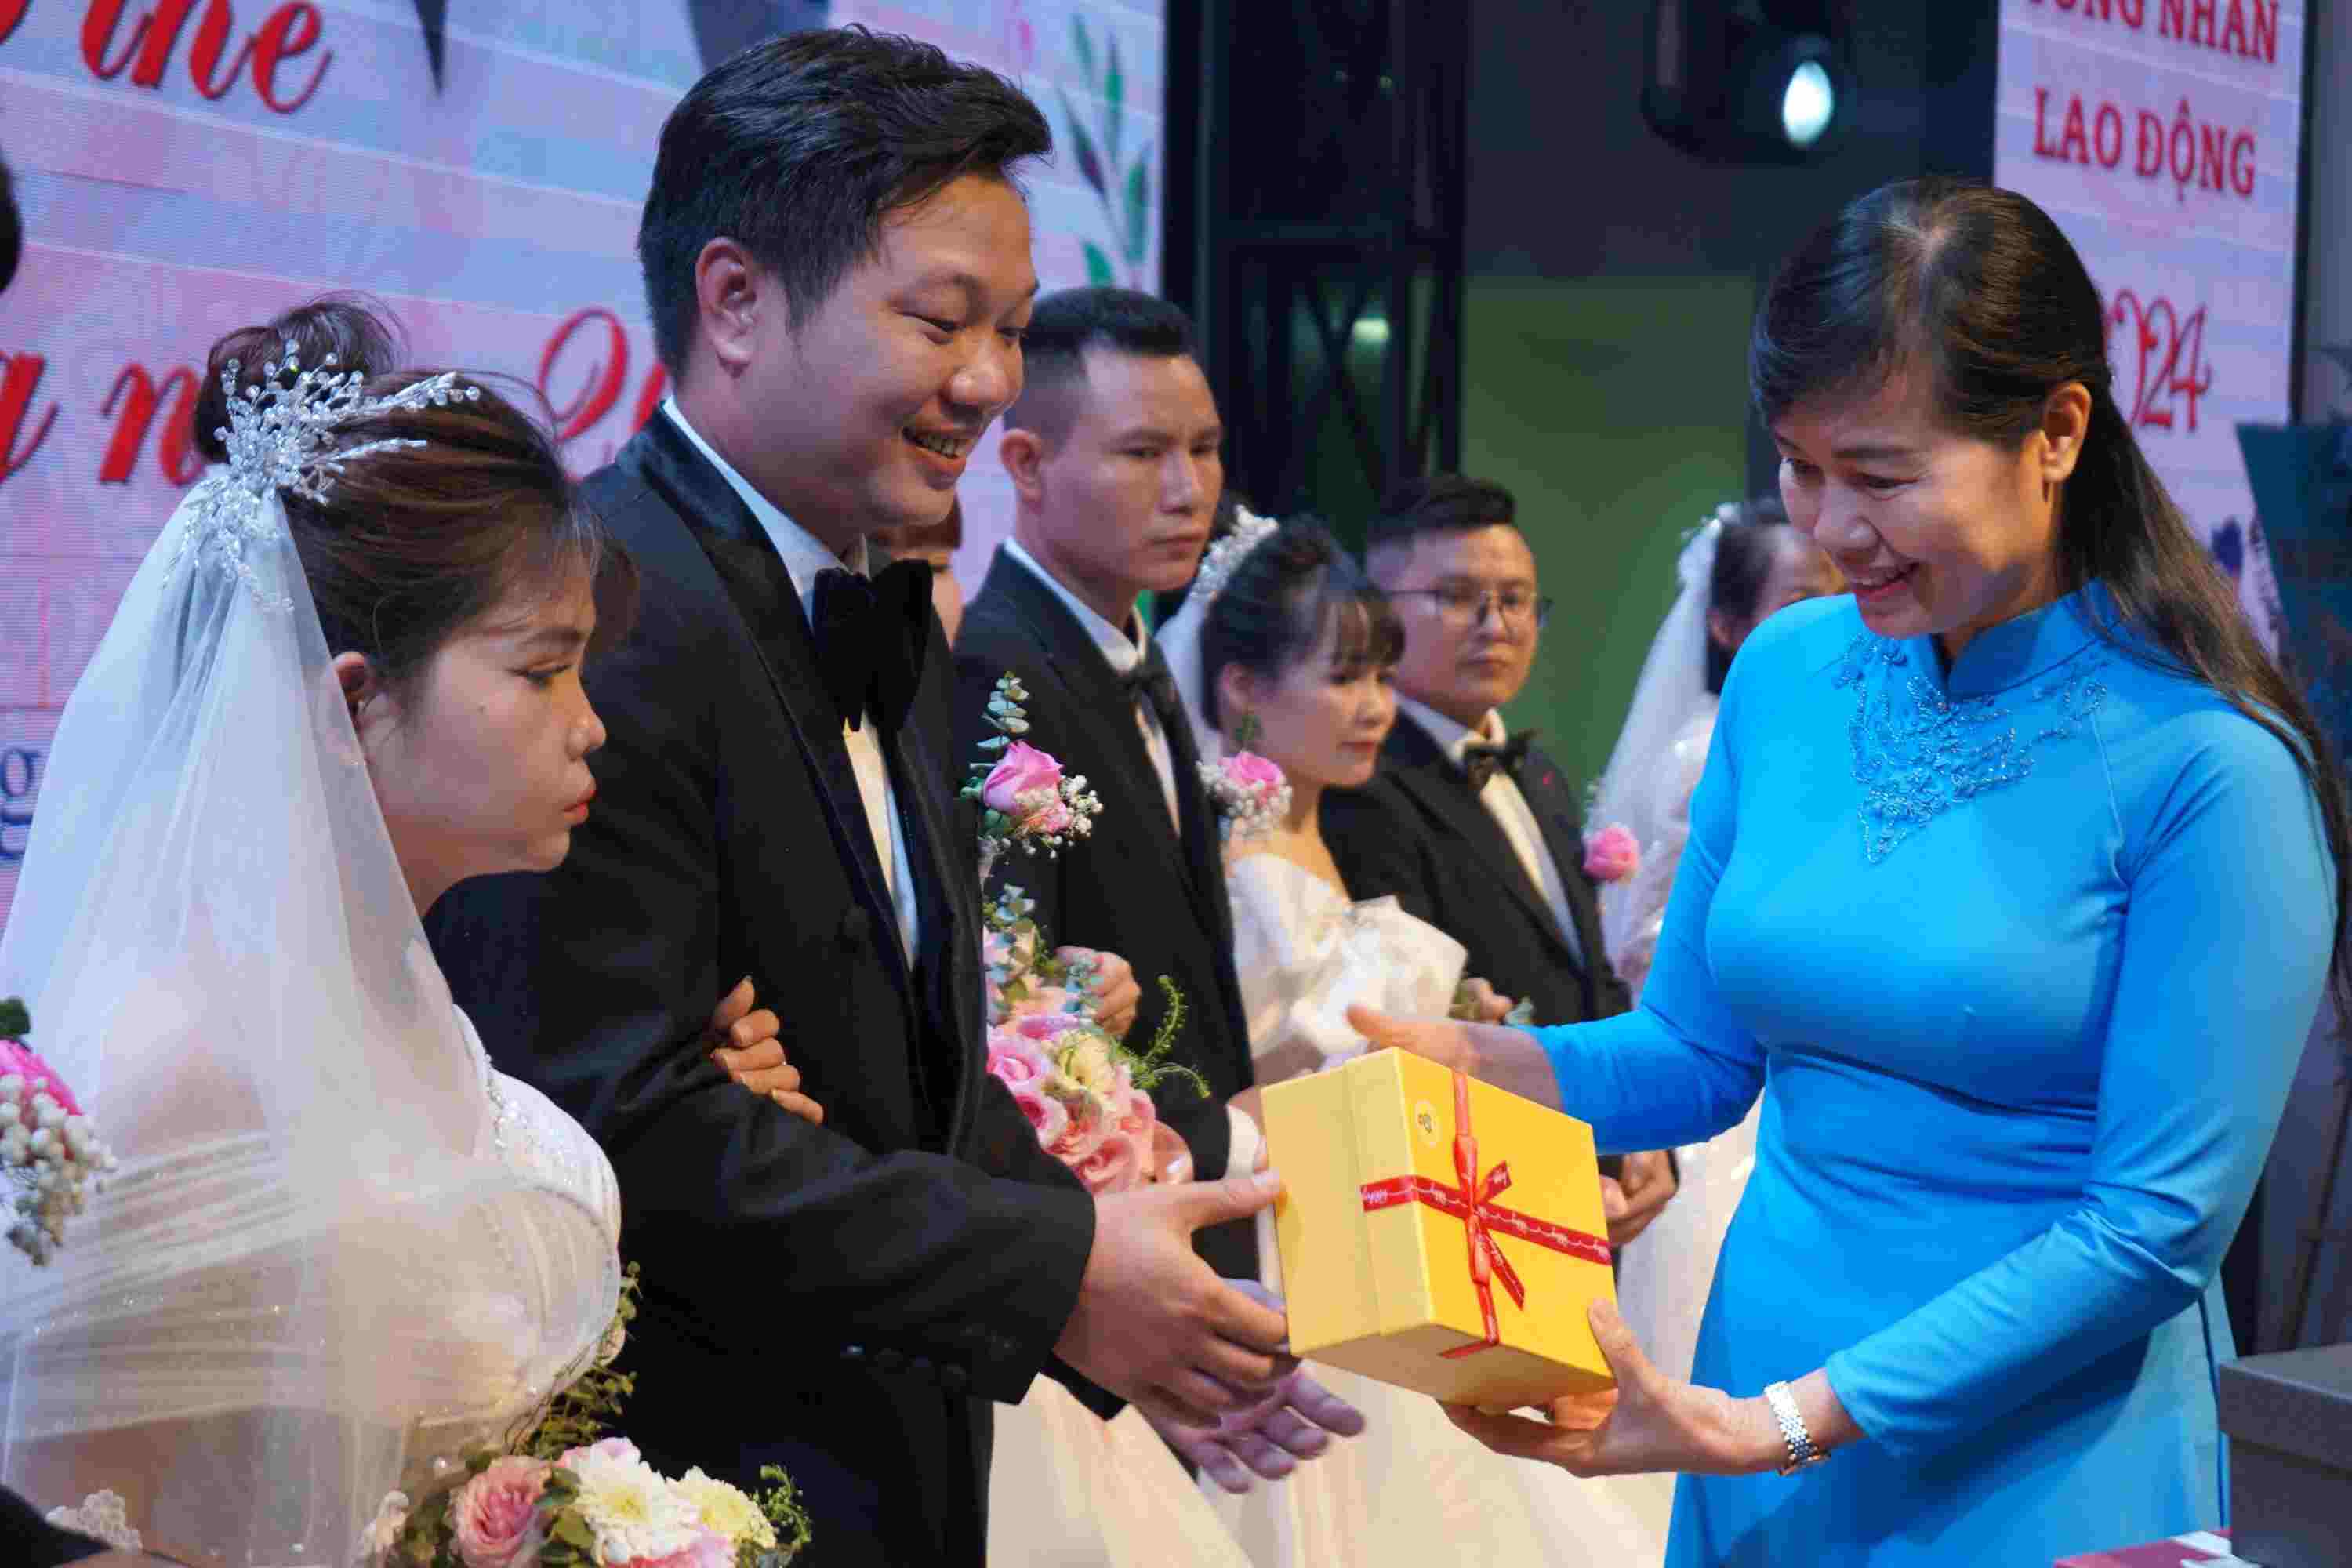 Đại diện LĐLĐ tỉnh Bắc Giang cũng có phần quà chúc phúc cho các cặp đôi công nhân.